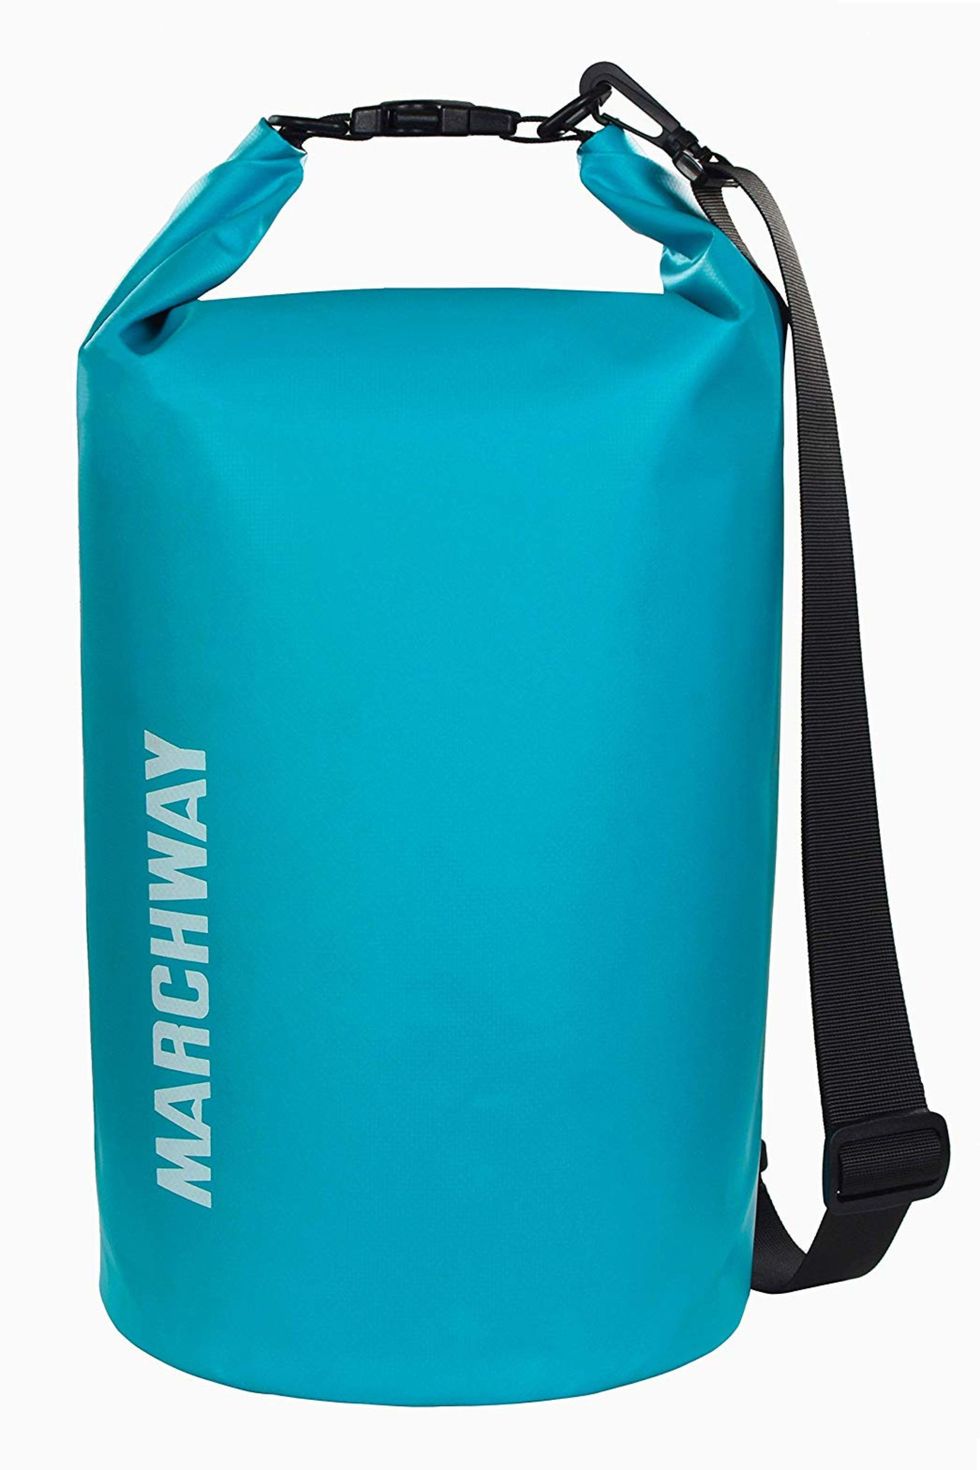 Floating Waterproof Dry Bag in 20L